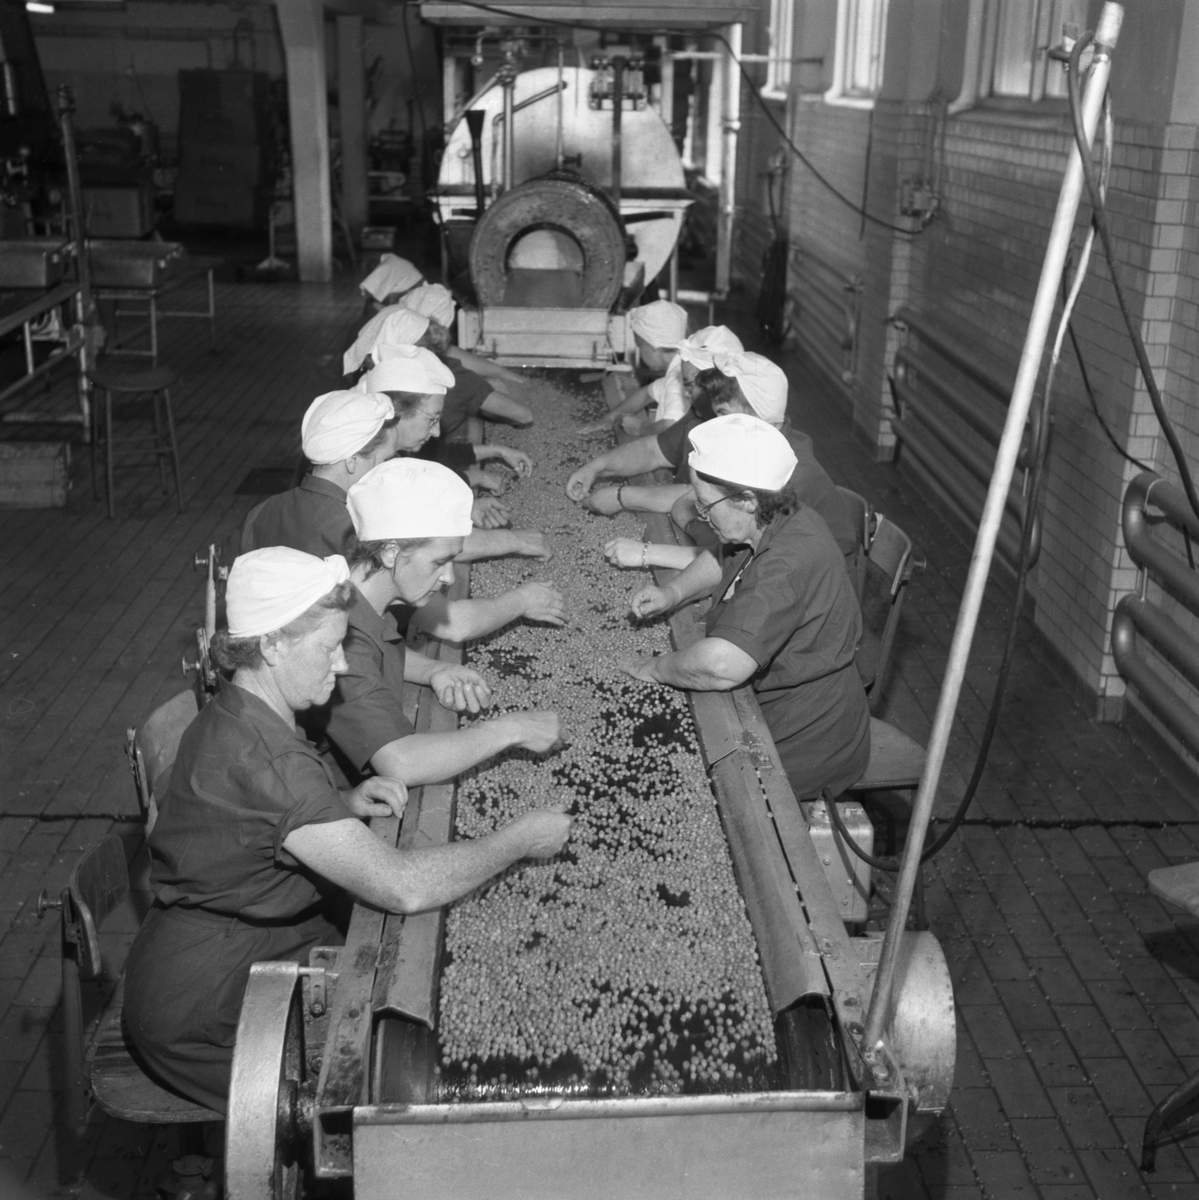 Interiör vid Sirius konservfabrik i Linköping. Företaget var inriktat på konservering av grönsaker och låg fram till nedläggelsen 1954 invid Nykvarn.